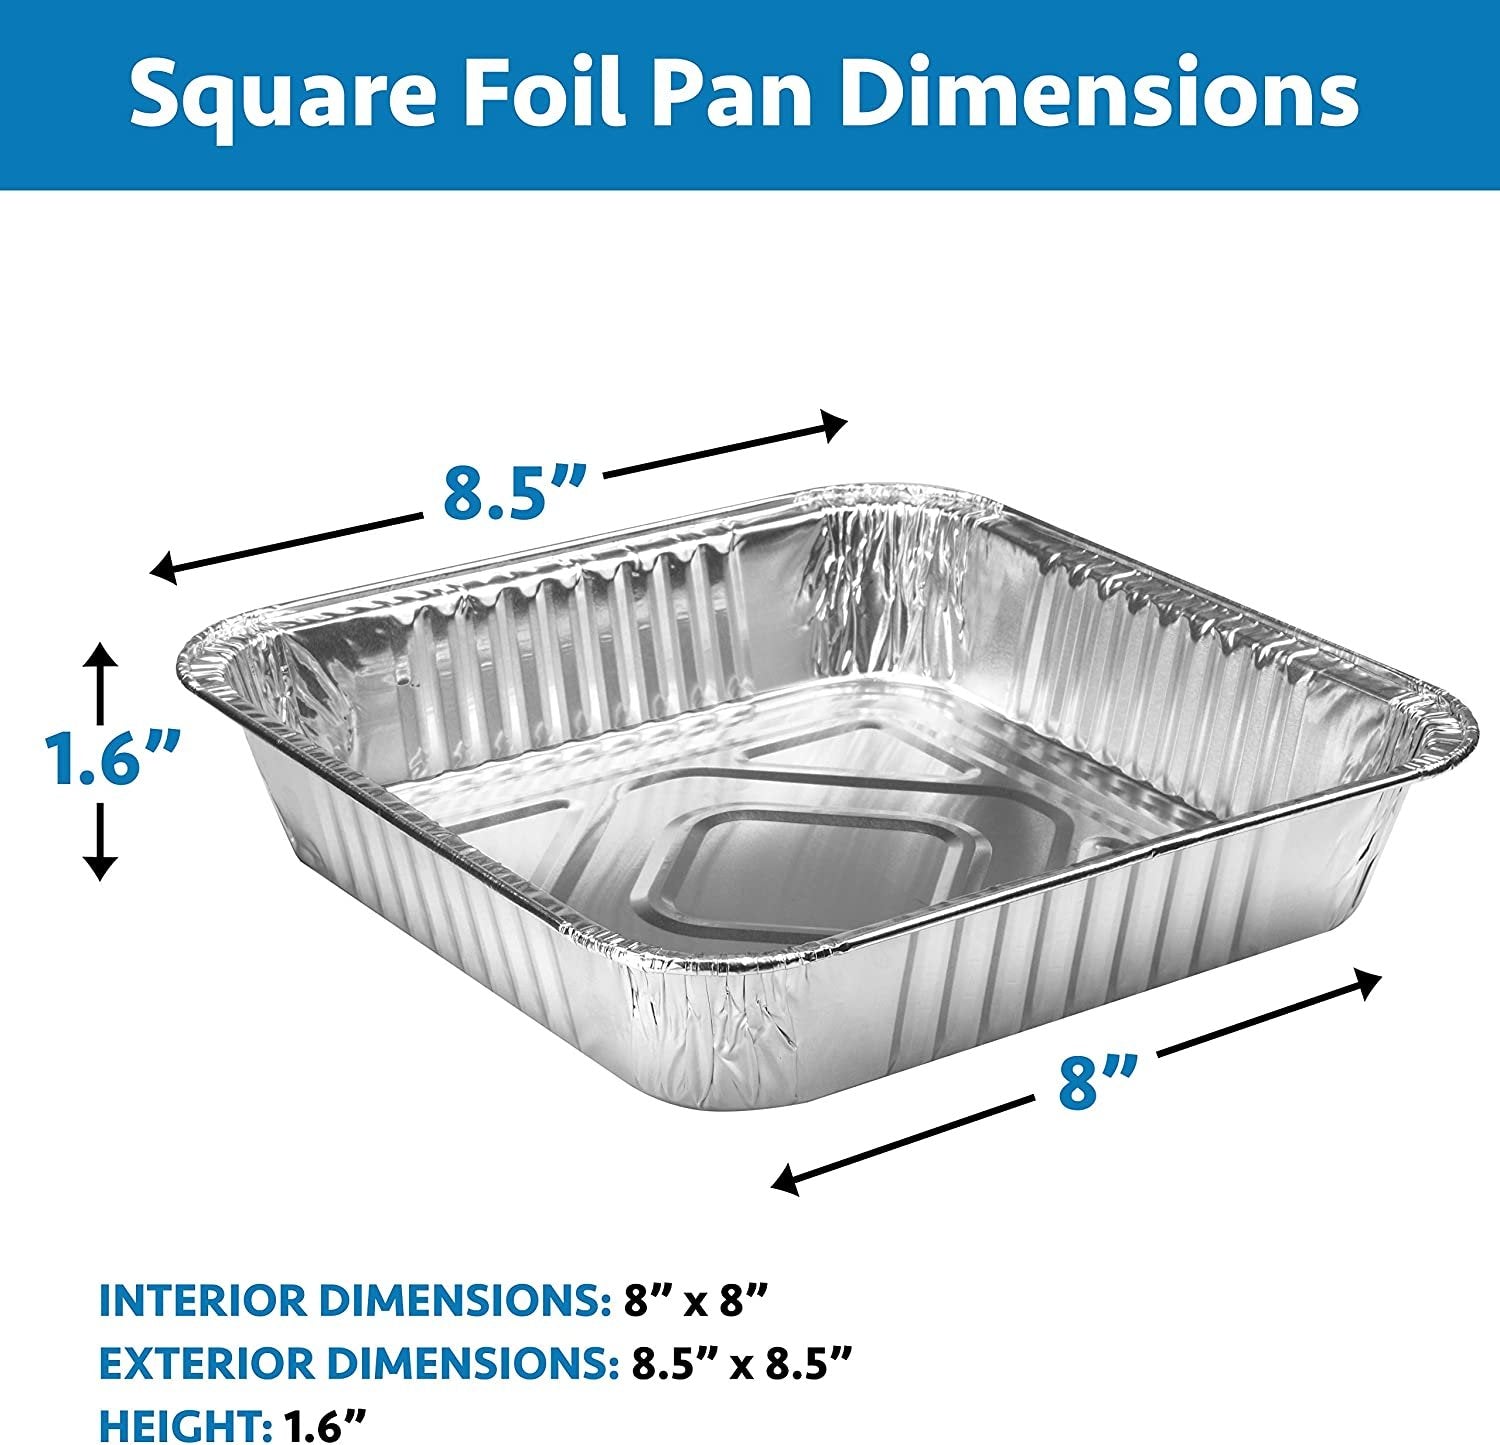 Disposable Aluminum Foil Pans with Lids Pack of 30